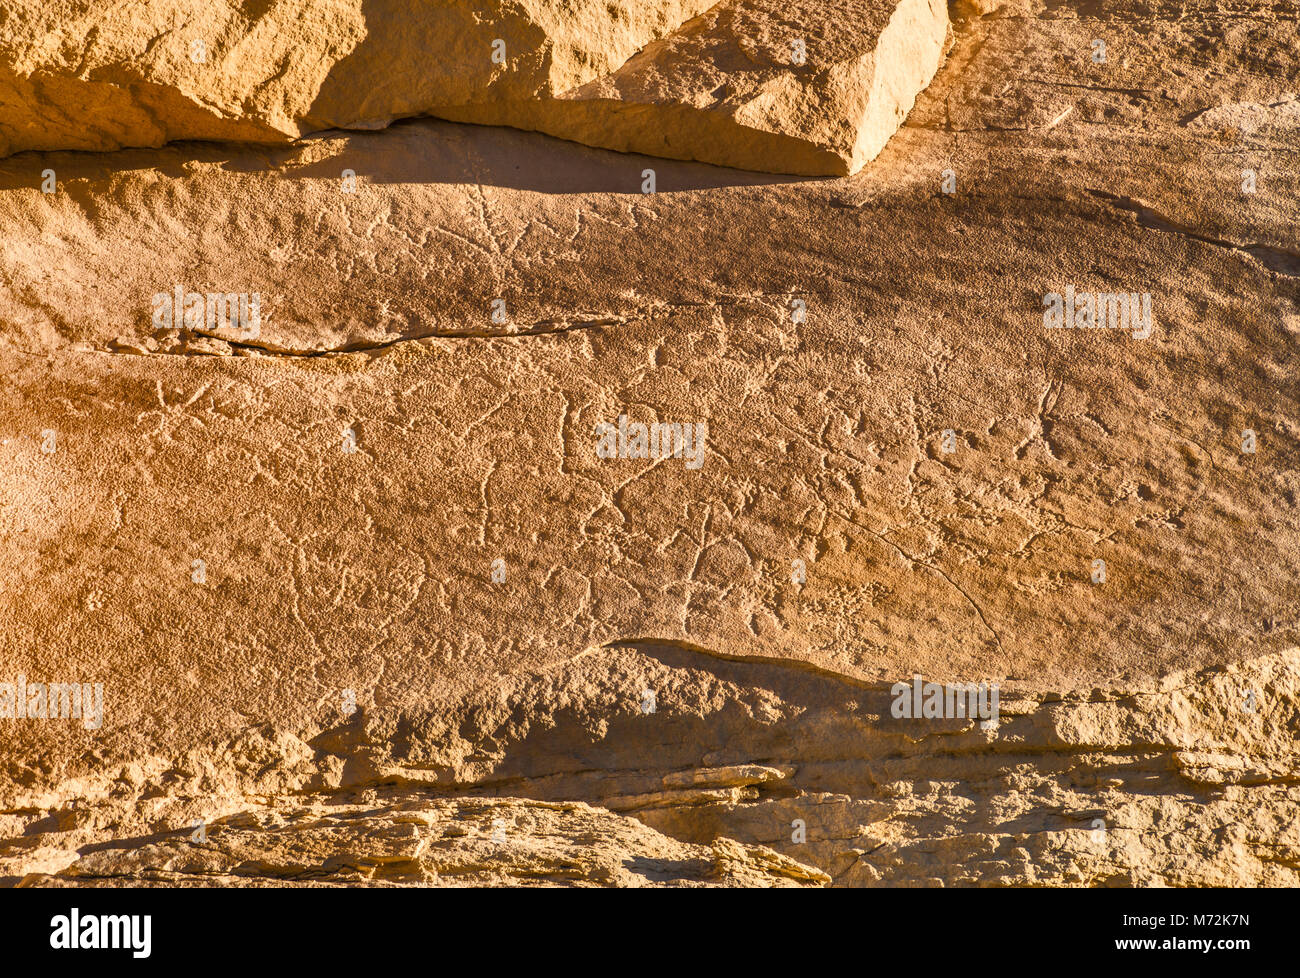 Este sitio Fourmile, Fremont cultura petroglifos panel de arte, Cañón Pintado, cerca del distrito histórico Rangely, Colorado, EE.UU. Foto de stock